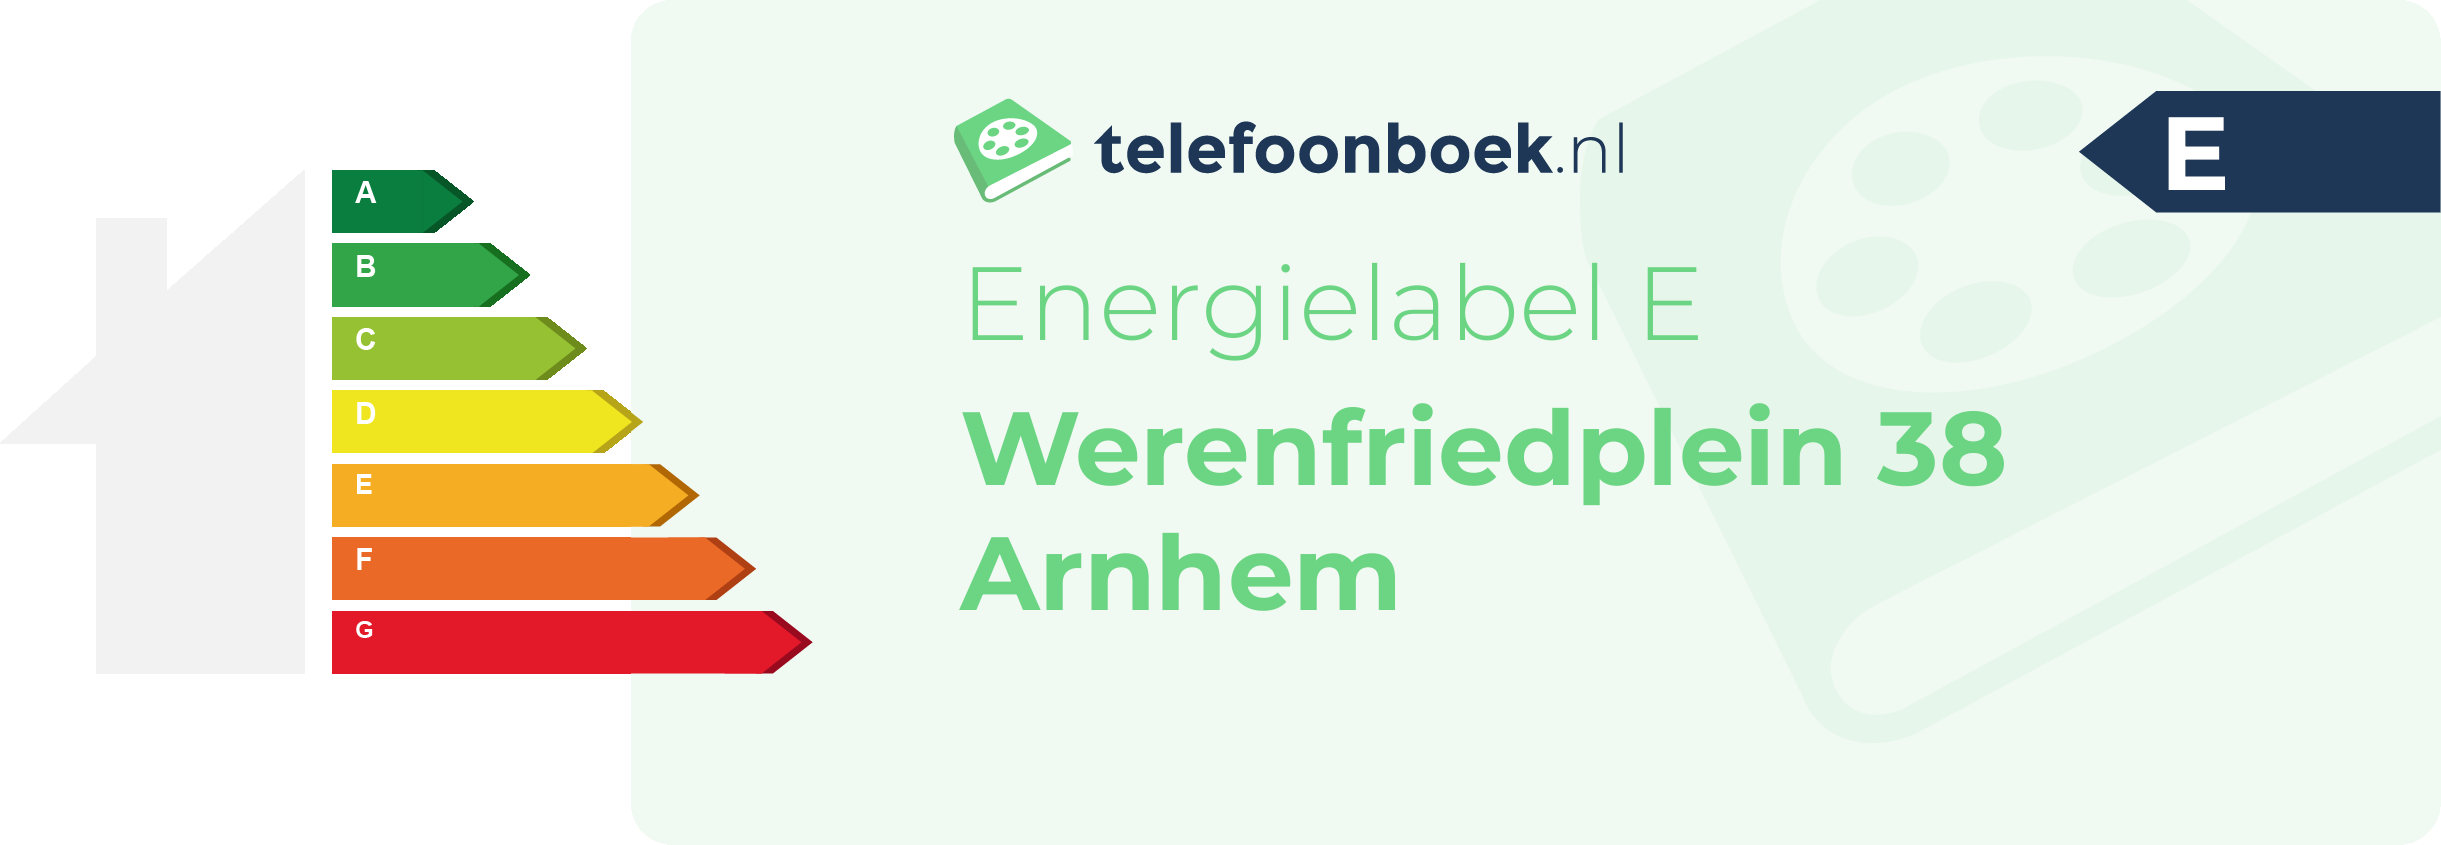 Energielabel Werenfriedplein 38 Arnhem